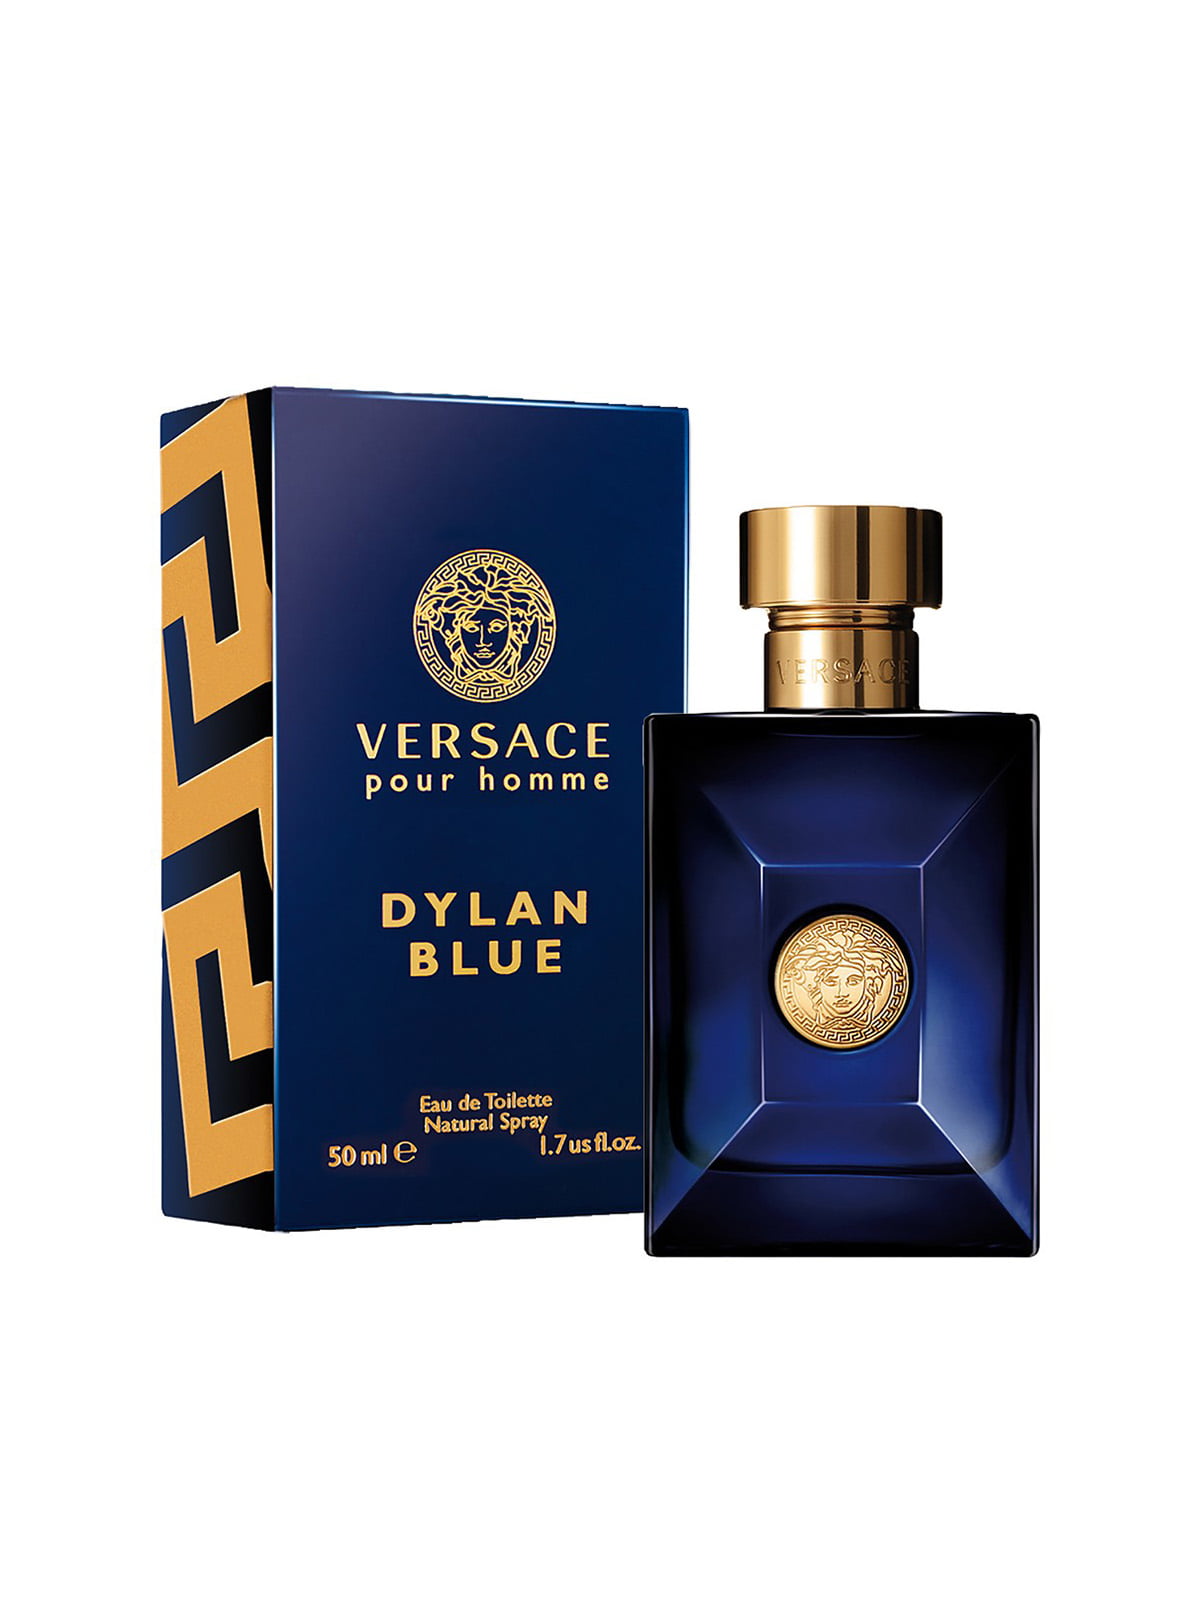 Versace blue мужские. Версаче Dylan Blue. Versace Dylan Blue 50 ml. Туалетная вода Versace Dylan Blue. Versace pour homme Dylan Blue.